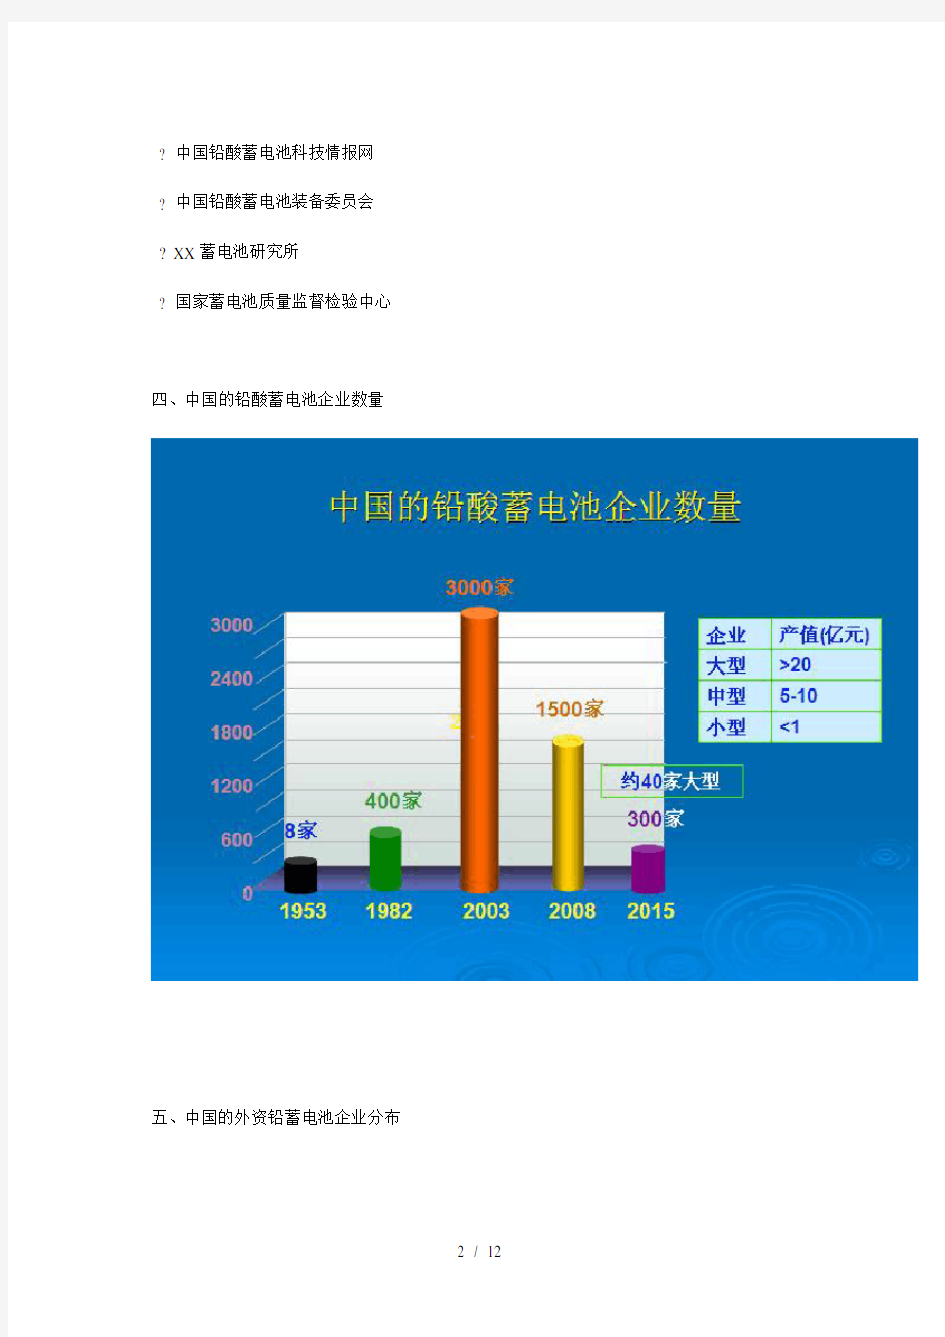 中国铅酸蓄电池行业发展概述